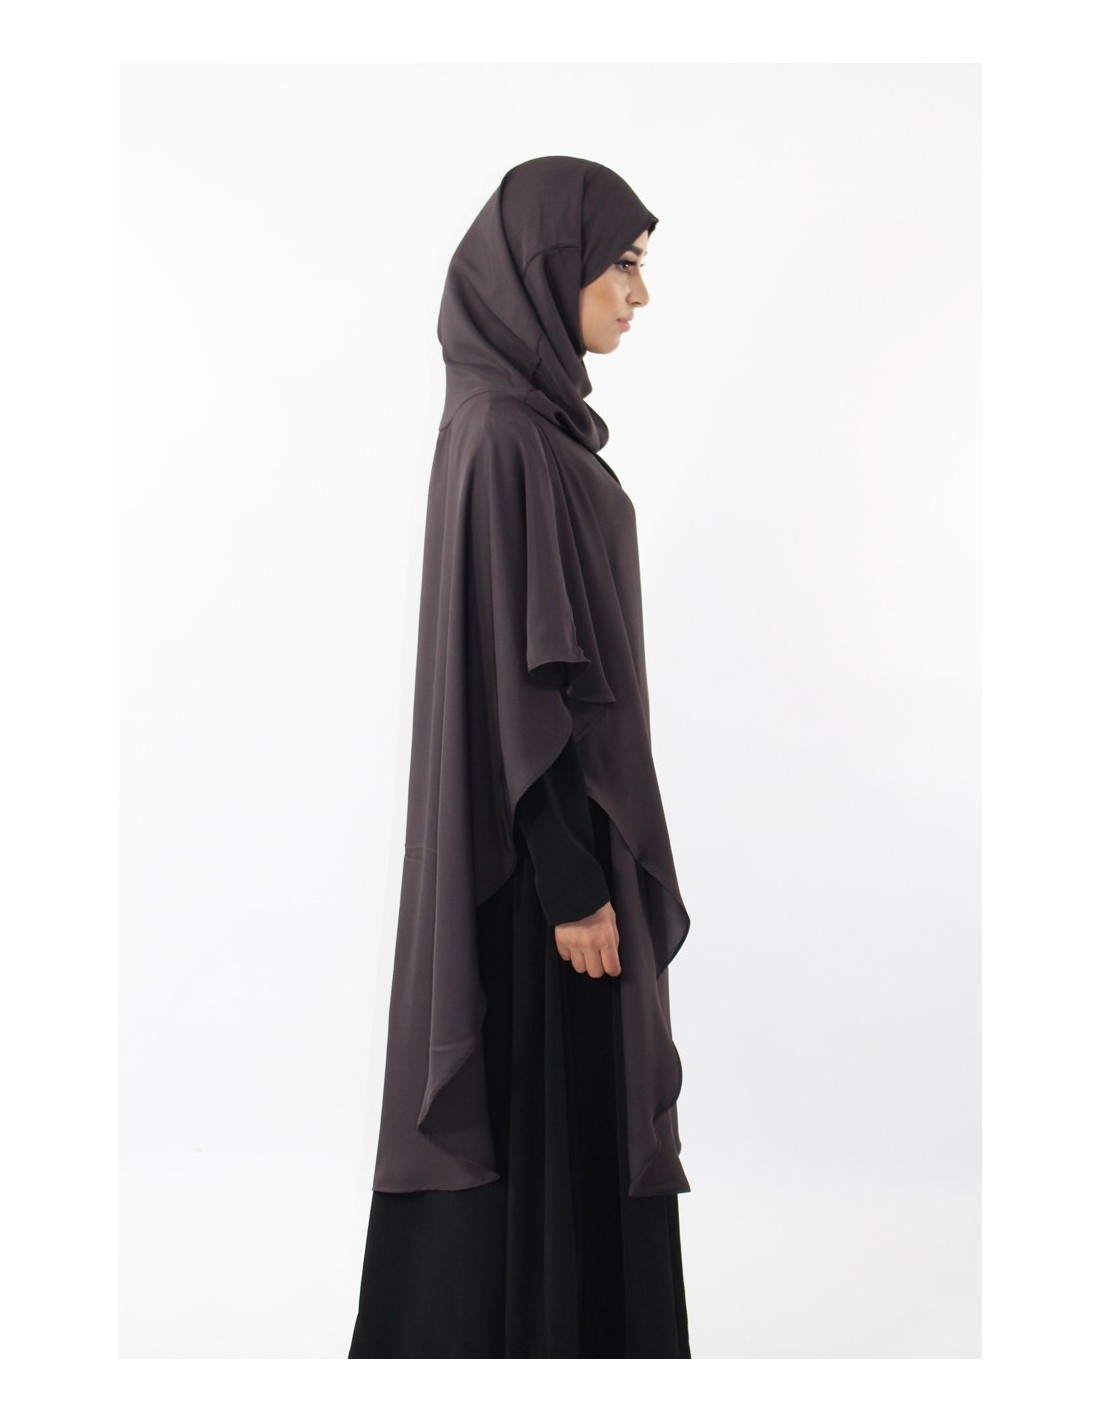 Langer Khimar Hijab integriert